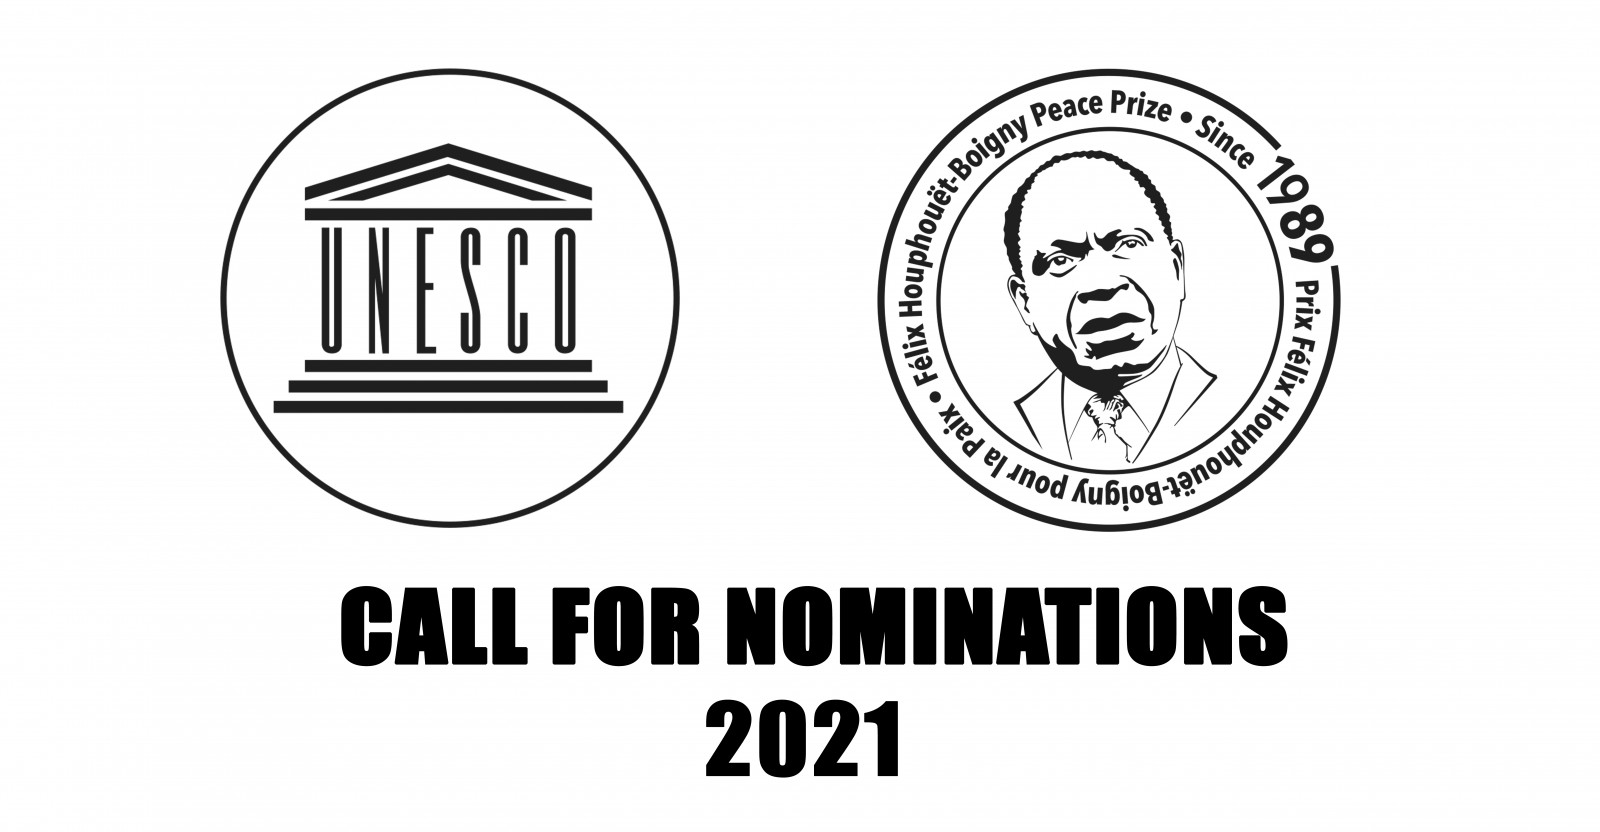 การเสนอชื่อบุคคลสมัครเข้ารับการคัดเลือกรางวัล Felix Houphouer-Boigny-UNESCO Peace Prize 2021